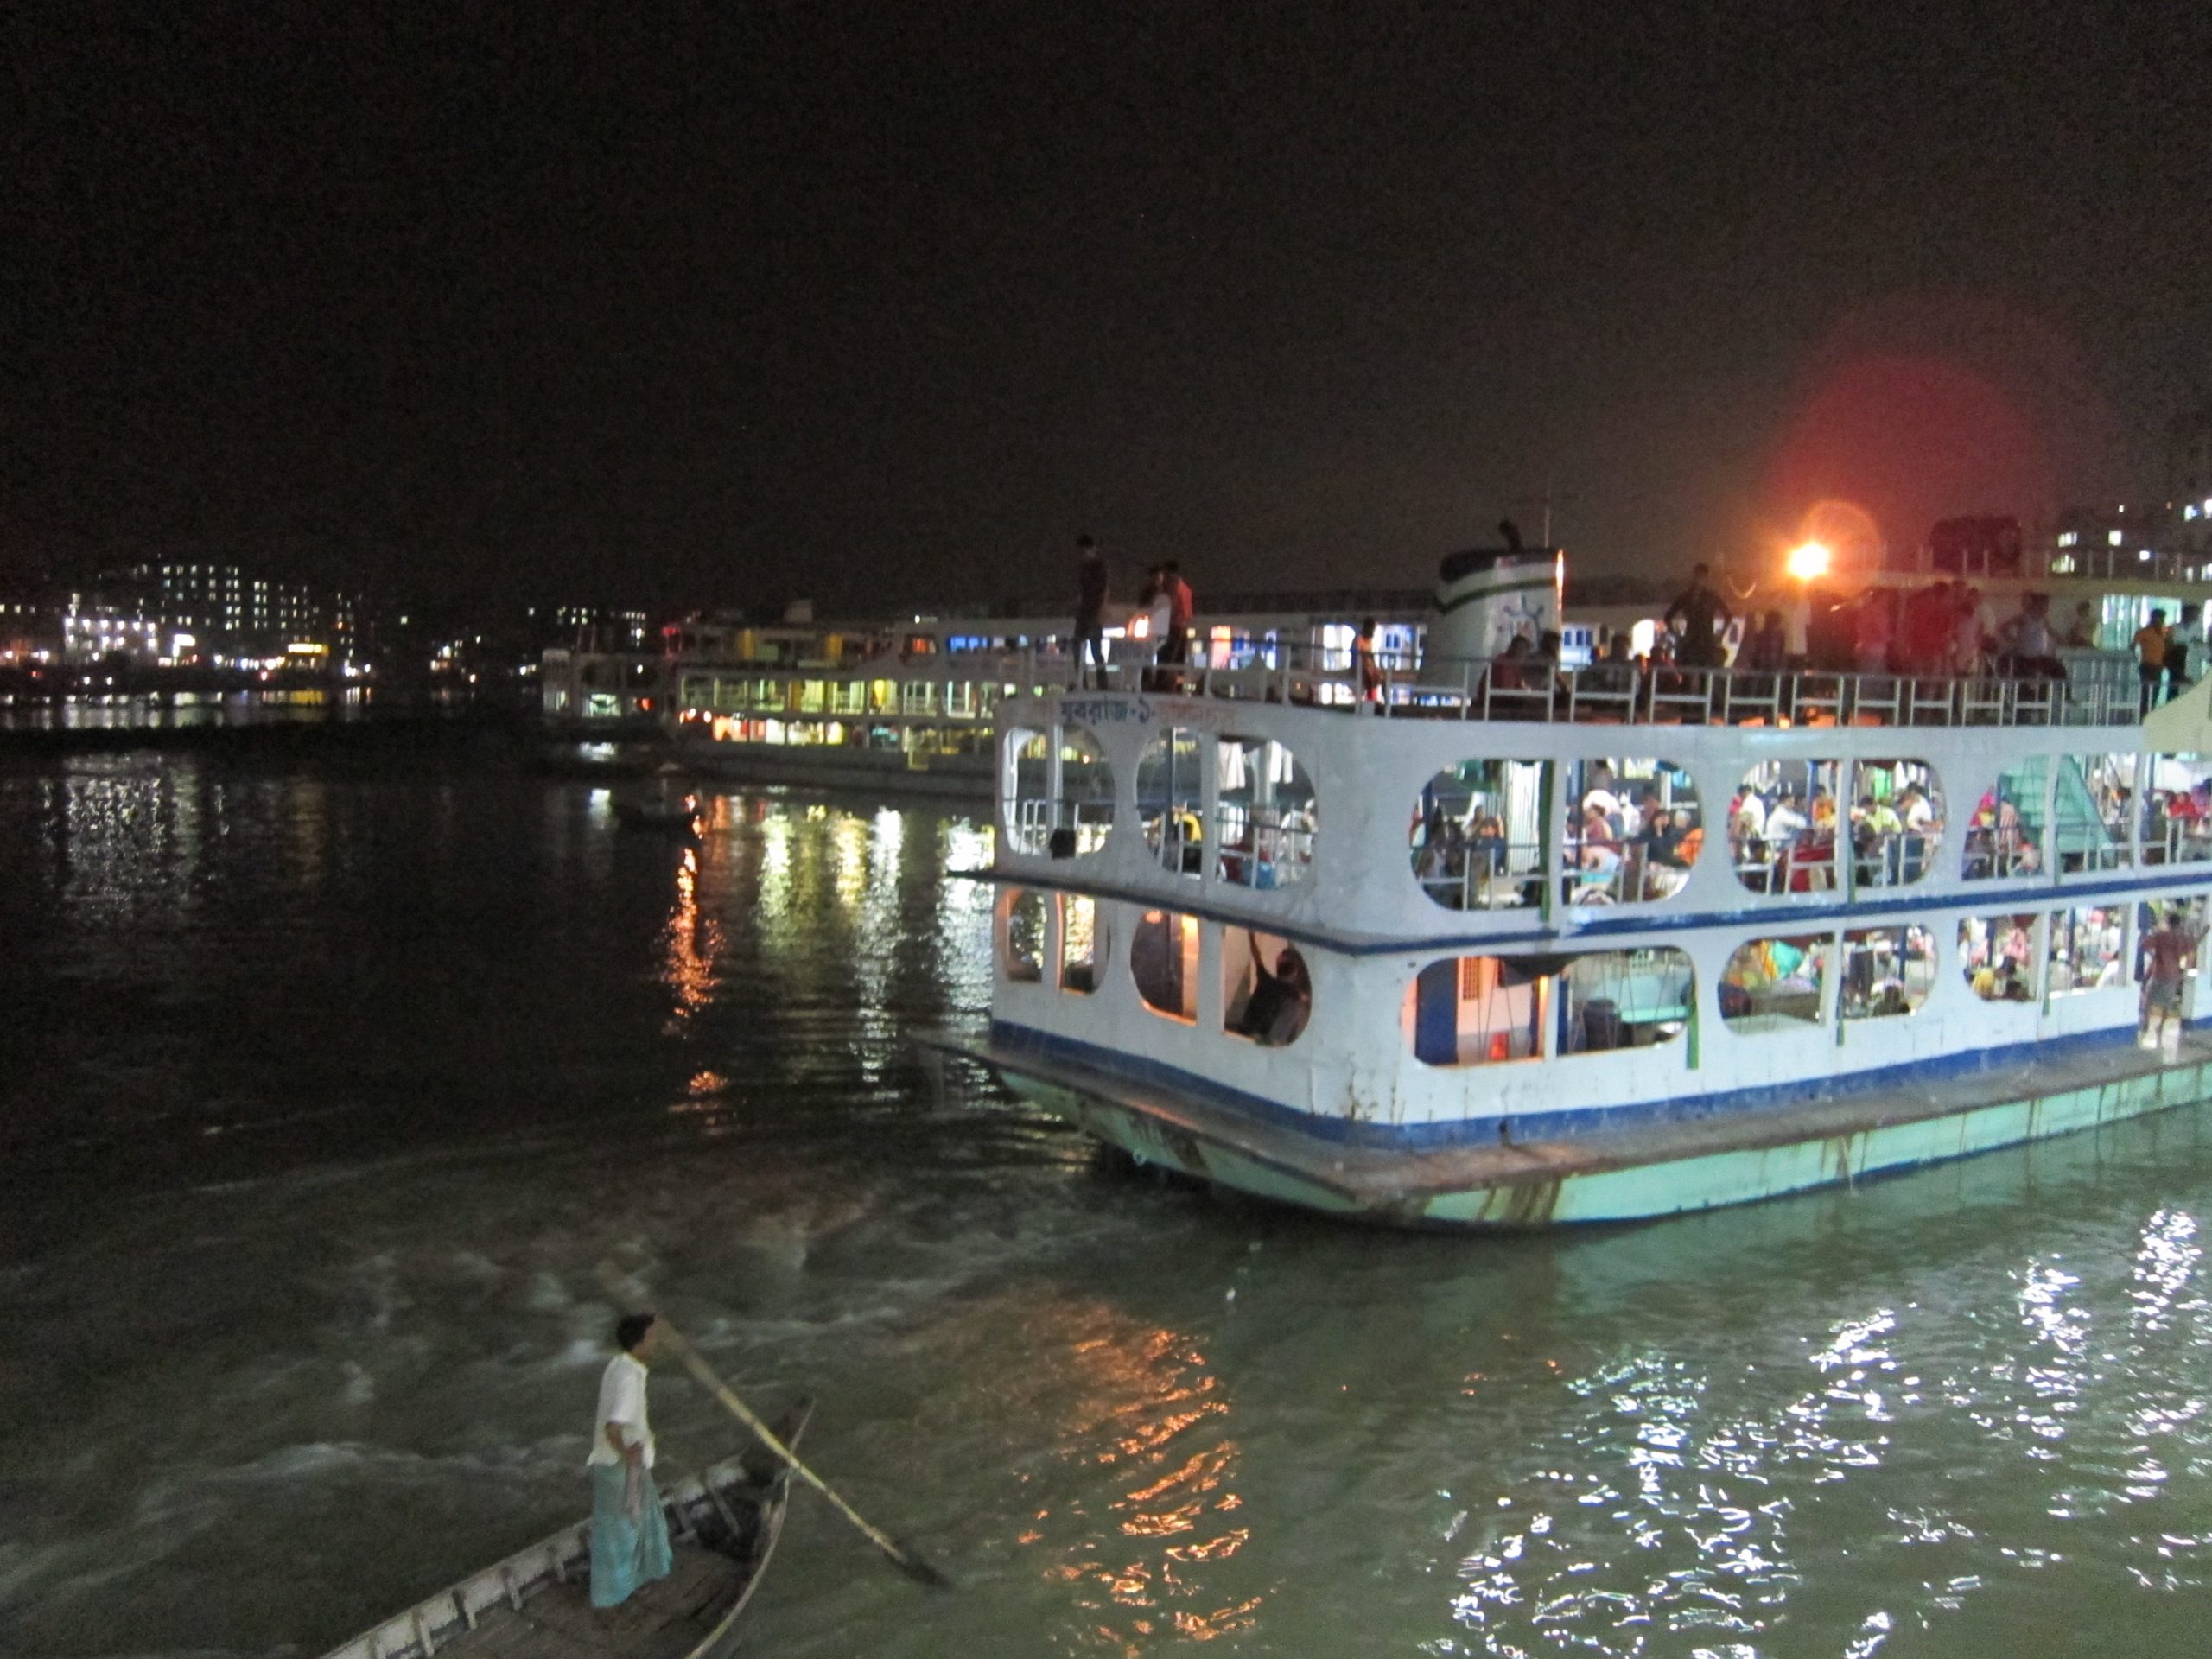 arlt barisal brahmaputra river bangladesh 2012 09 01